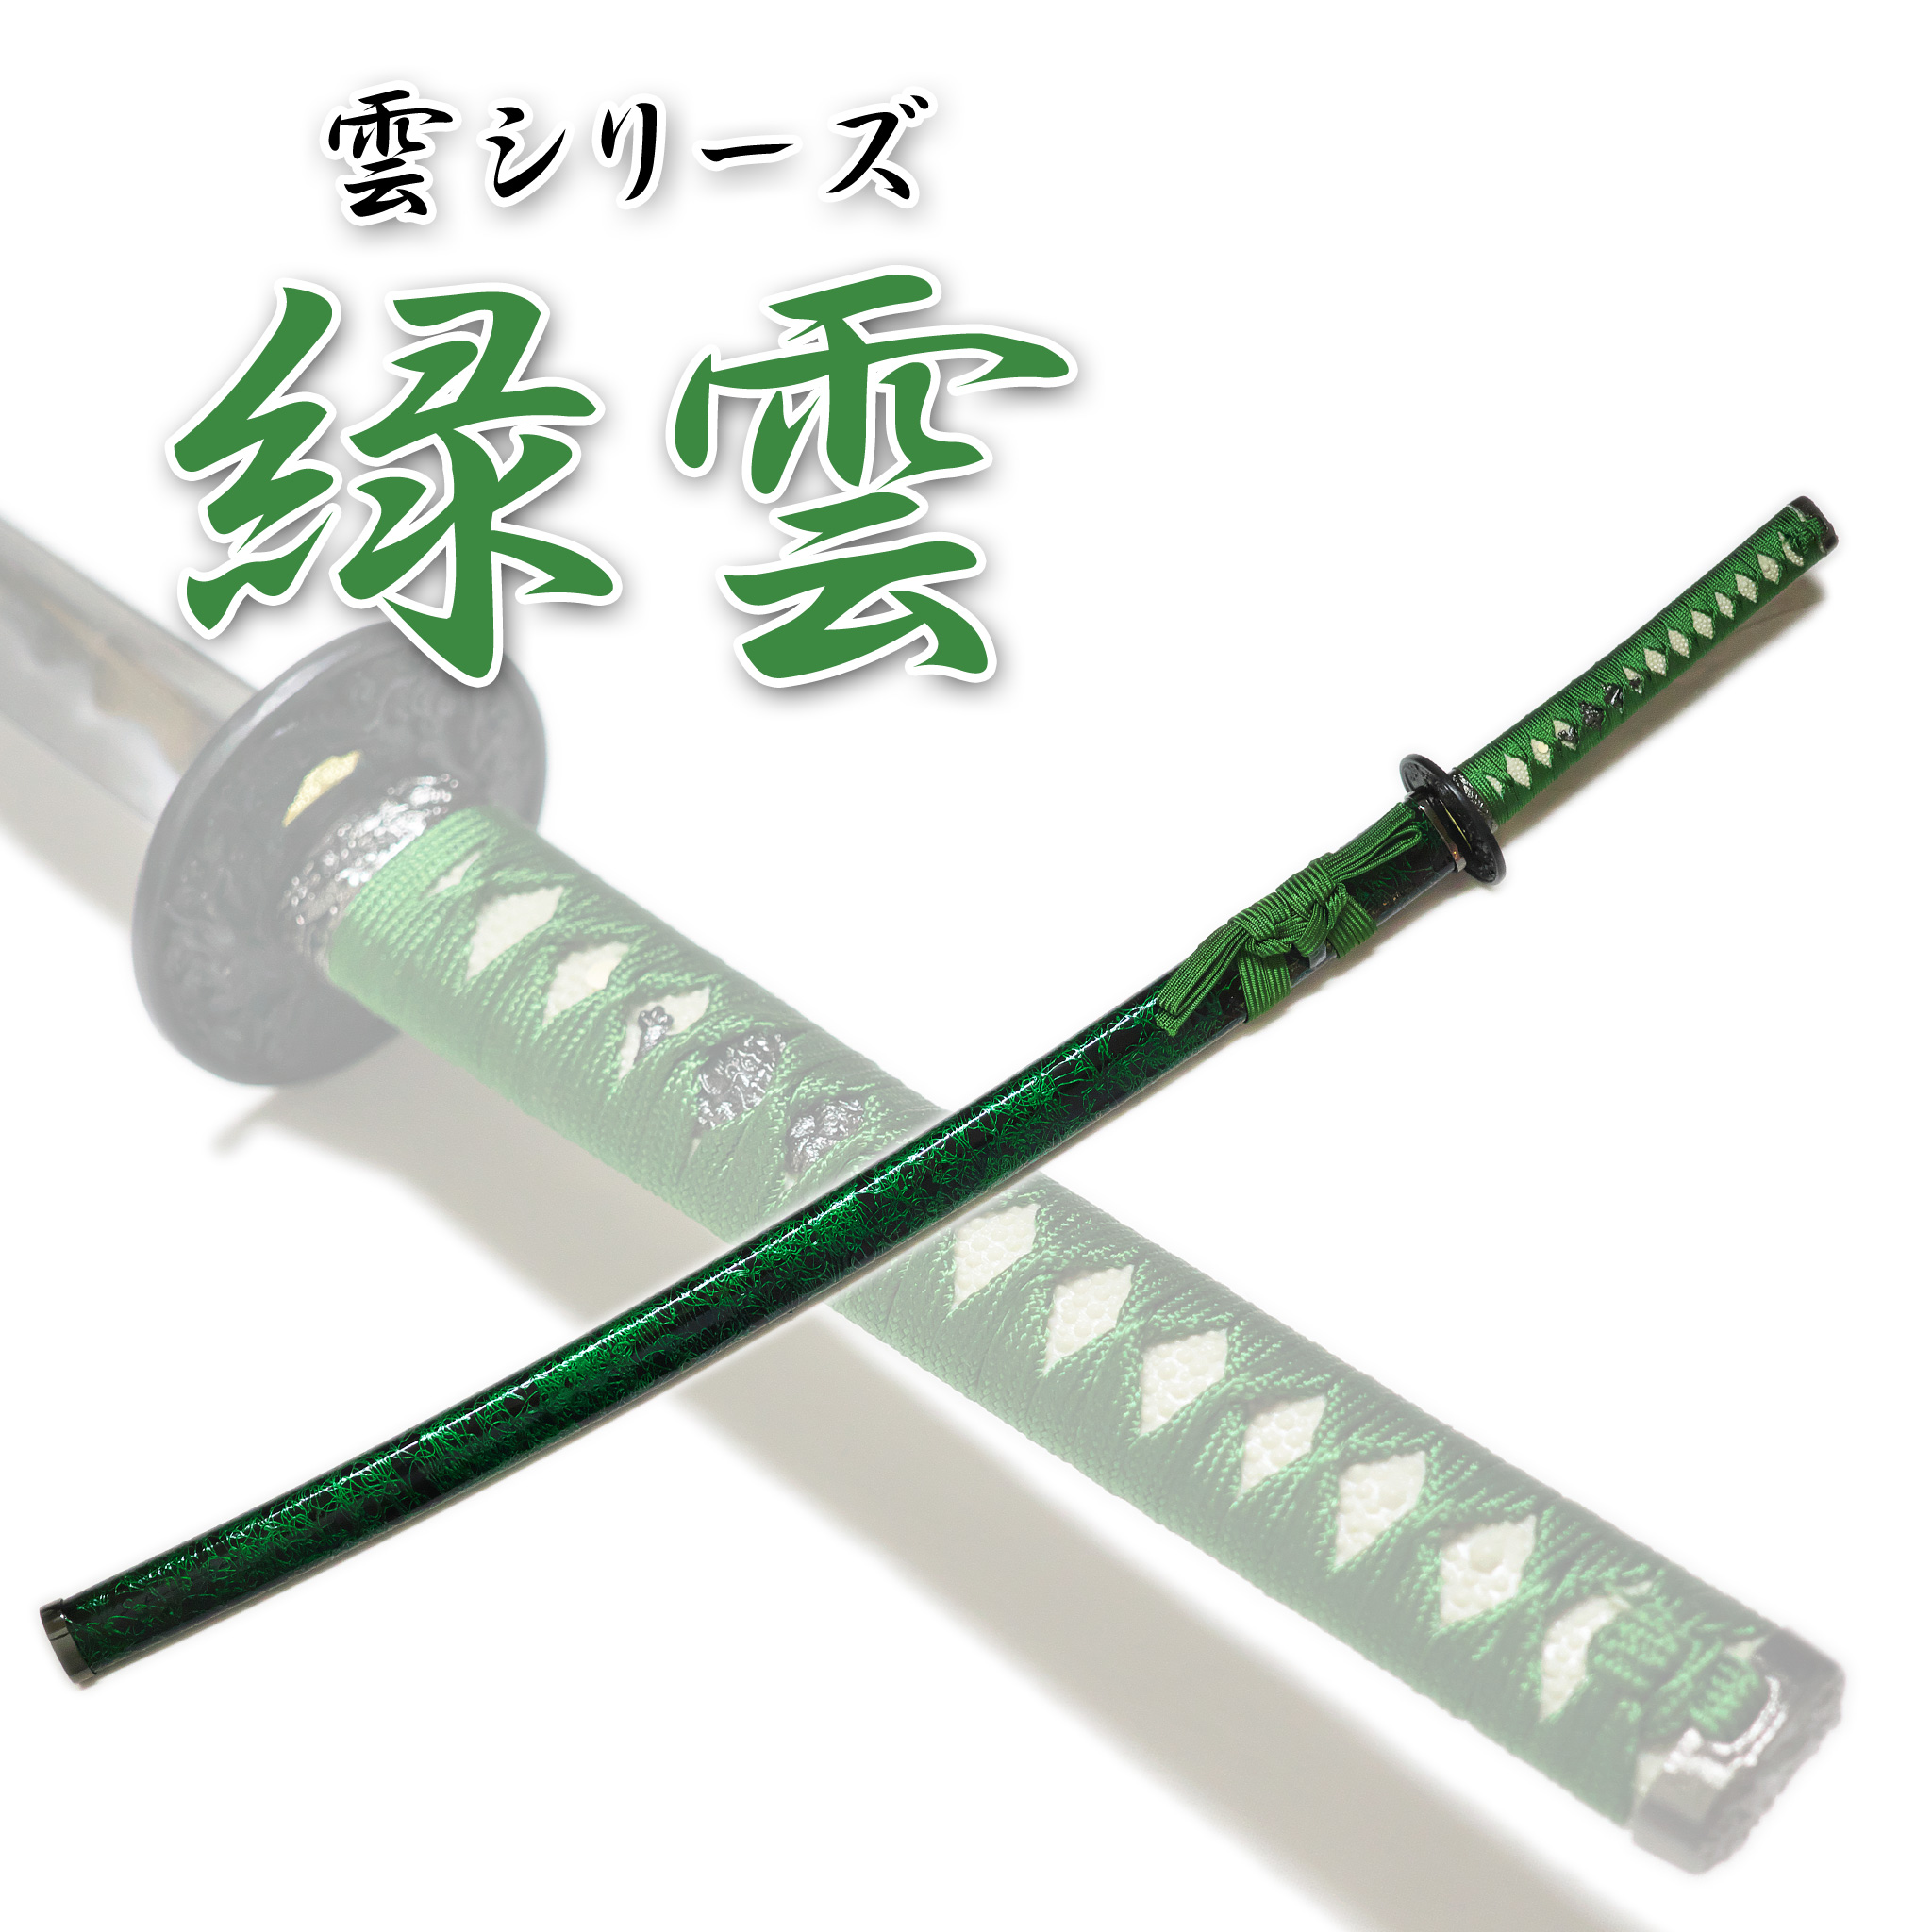 匠刀房 雲シリーズ 緑雲 NEU-059L - 大刀 模造刀